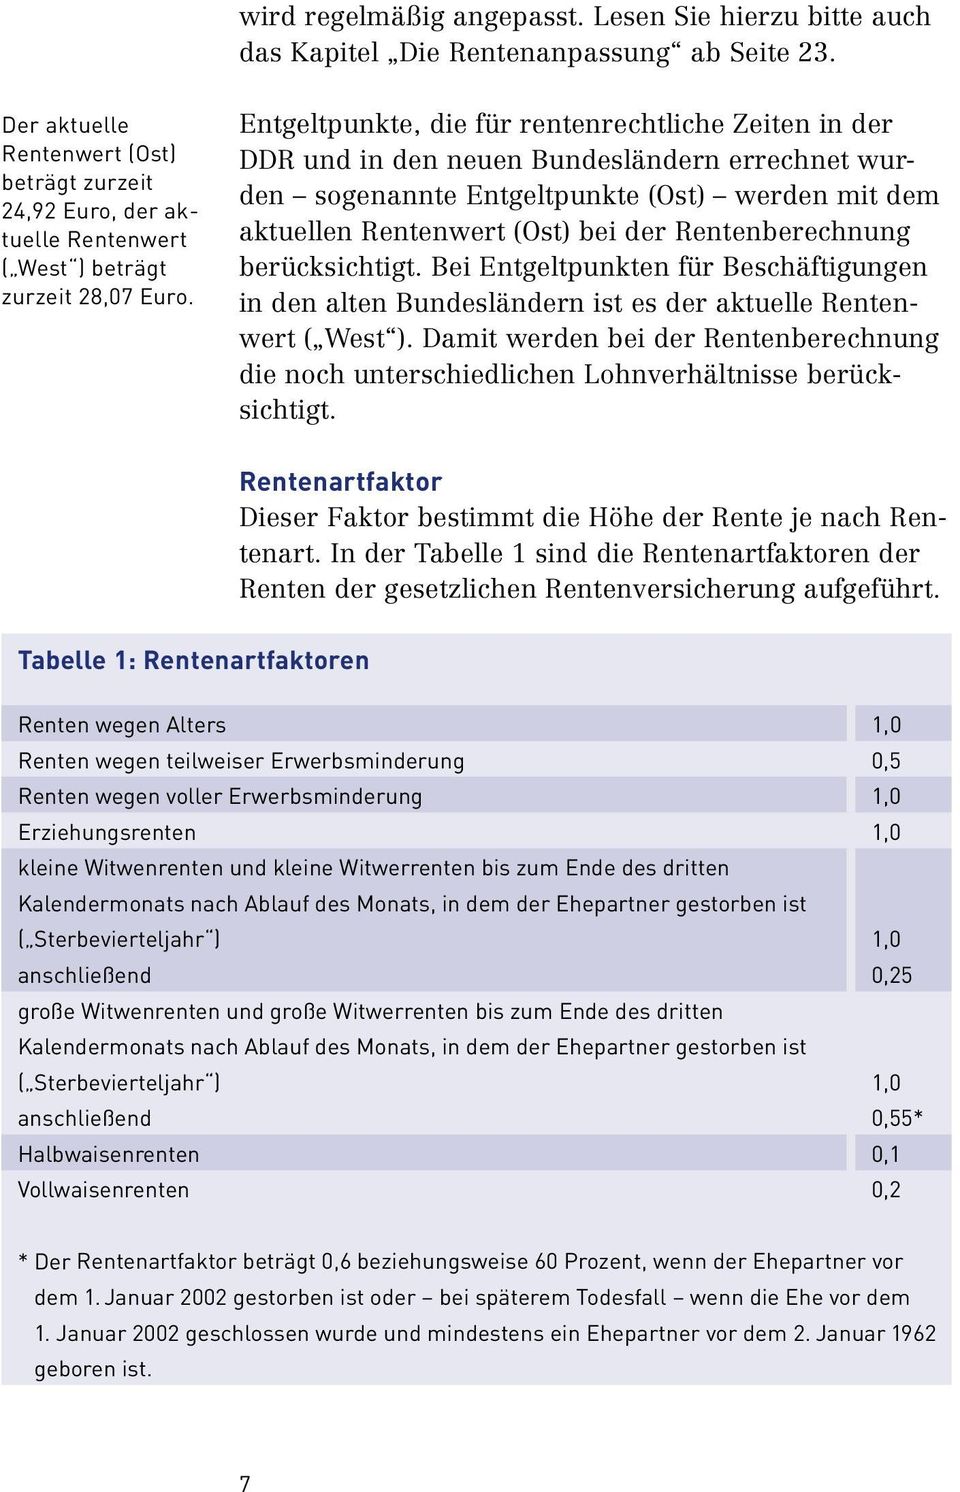 Entgeltpunkte, die für rentenrechtliche Zeiten in der DDR und in den neuen Bundesländern errechnet wurden soge nannte Entgeltpunkte (Ost) werden mit dem aktuellen Renten wert (Ost) bei der